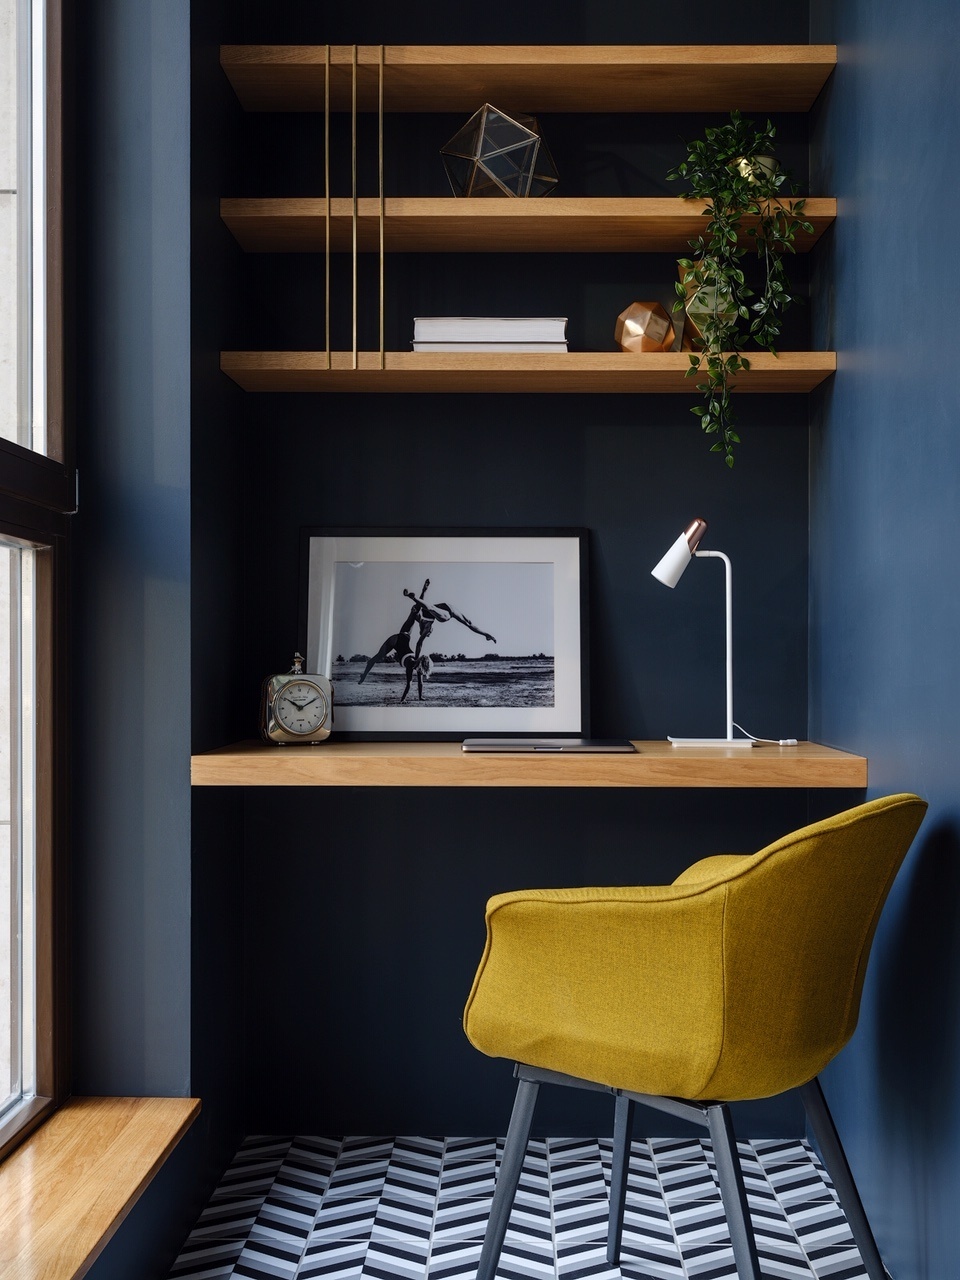 Hệ thống kệ mở, bàn gỗ gắn tường đều được thiết kế bởi Yulia Kamanina và sản xuất theo đơn đặt hàng để đảm bảo “vừa vặn với không gian. Chiếc ghế màu vàng mù tạt kết hợp với sơn tường màu xanh lam đậm trở thành bộ đôi sắc màu ấn tượng.